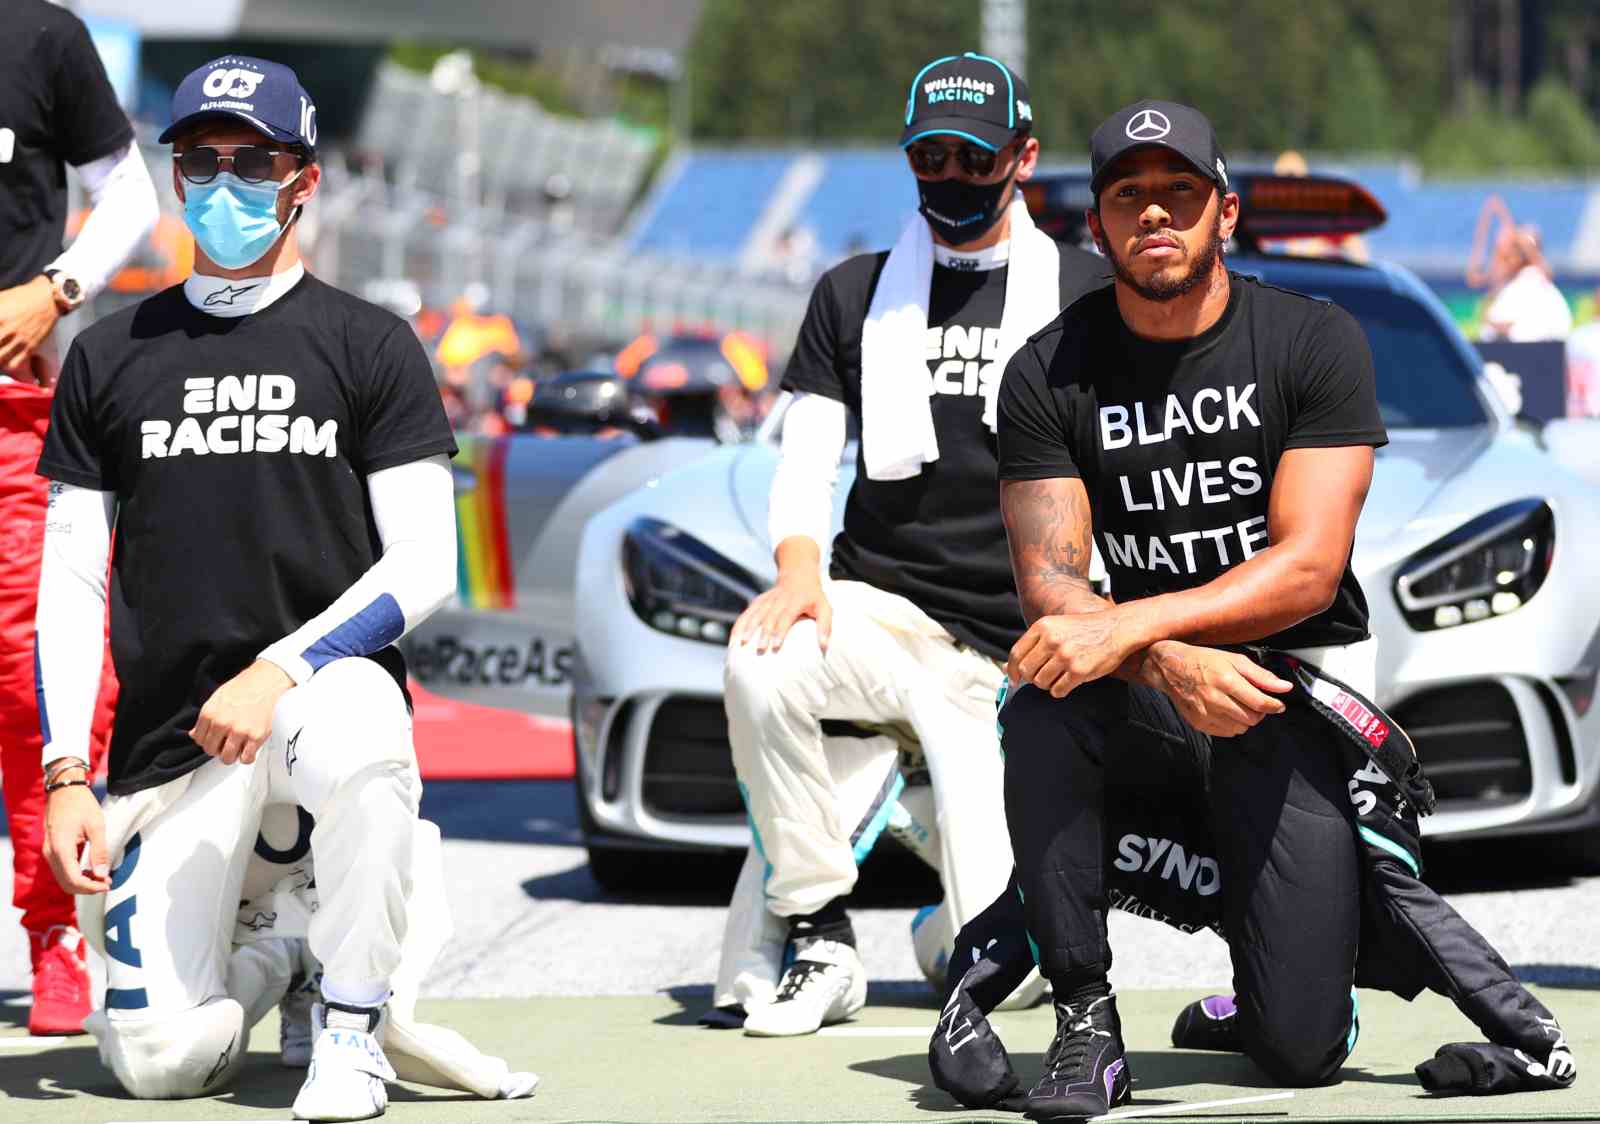 Os pilotos fizeram protesto contra o racismo antes do GP da Áustria